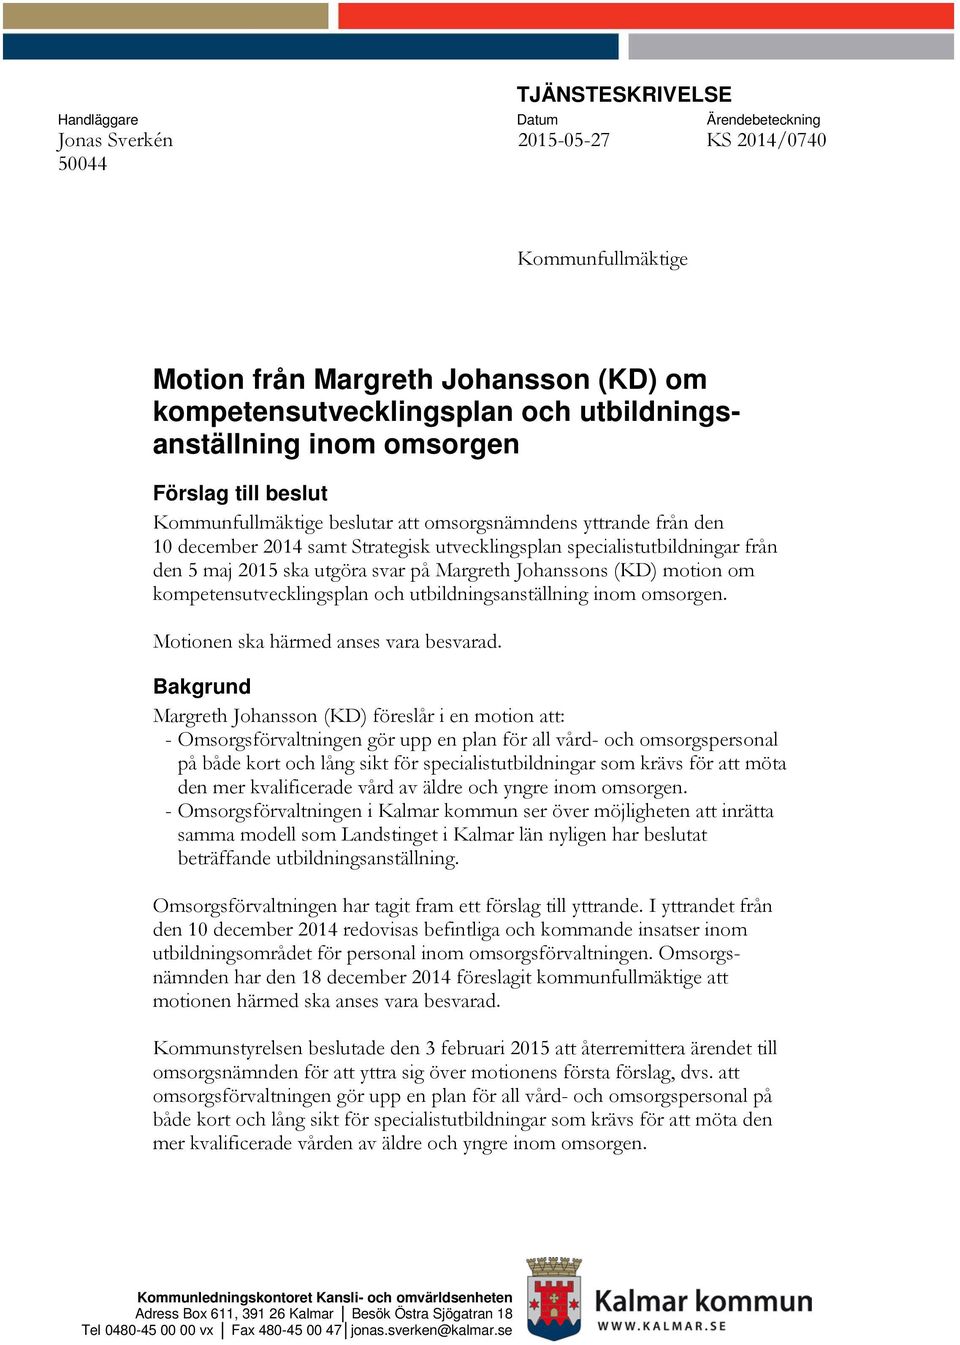 den 5 maj 2015 ska utgöra svar på Margreth Johanssons (KD) motion om kompetensutvecklingsplan och utbildningsanställning inom omsorgen. Motionen ska härmed anses vara besvarad.